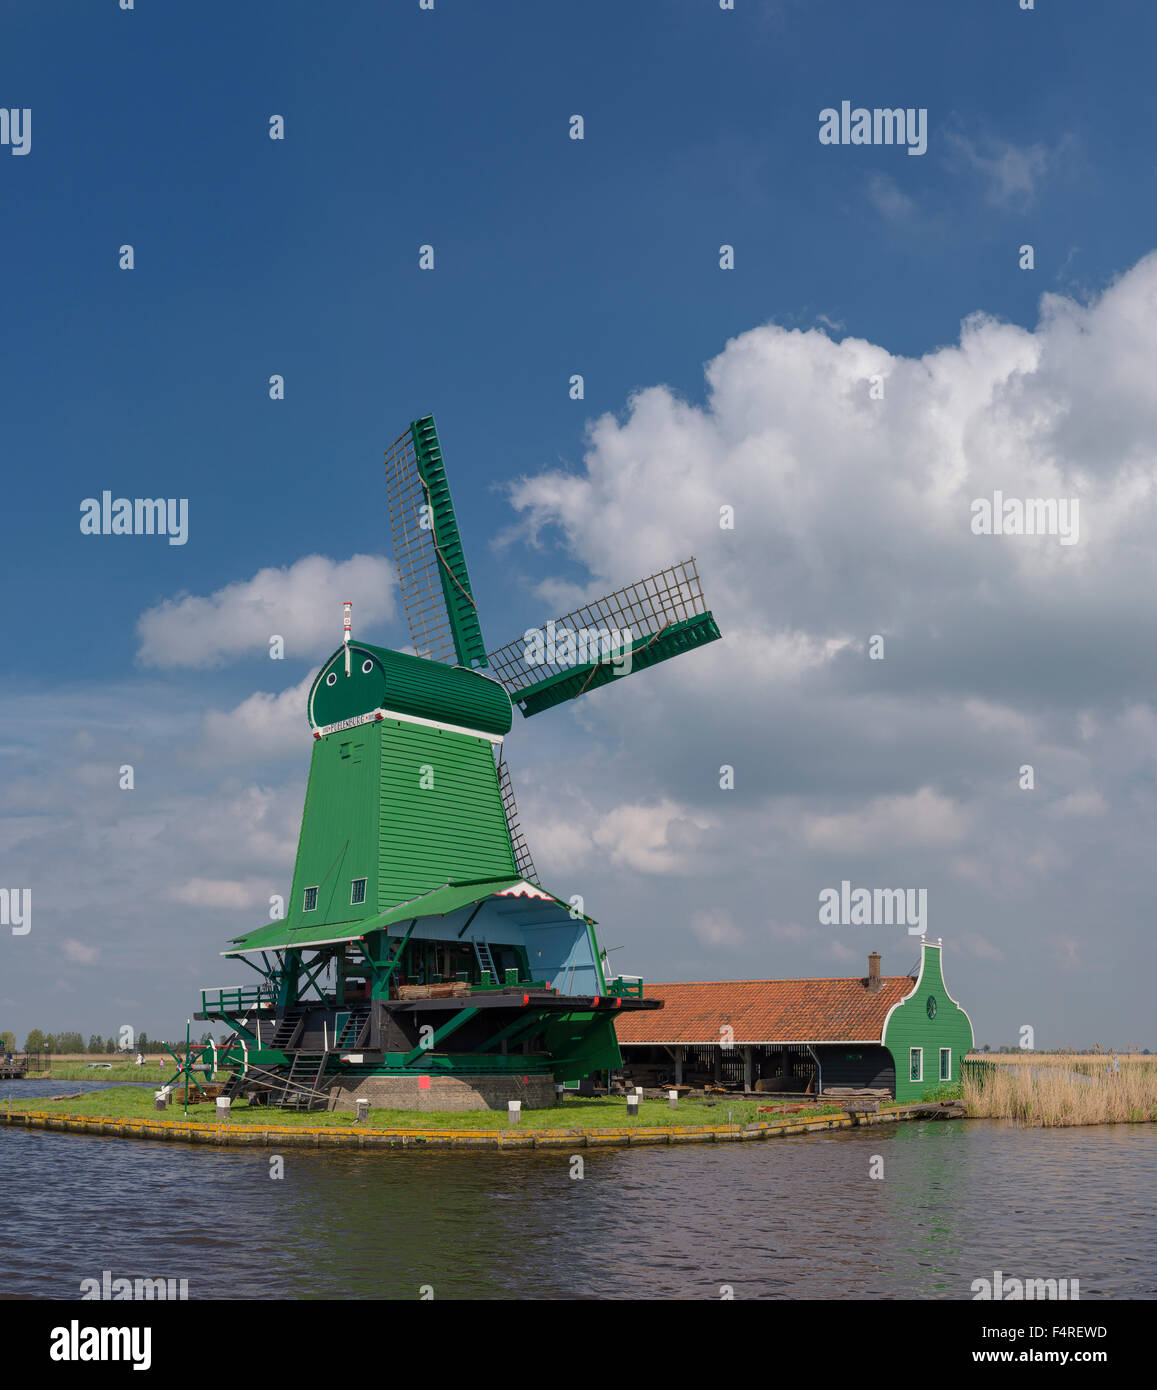 Netherlands, Holland, Europe, windmill, water, summer, Windmill, river, De Zaan, Zaandam, Stock Photo